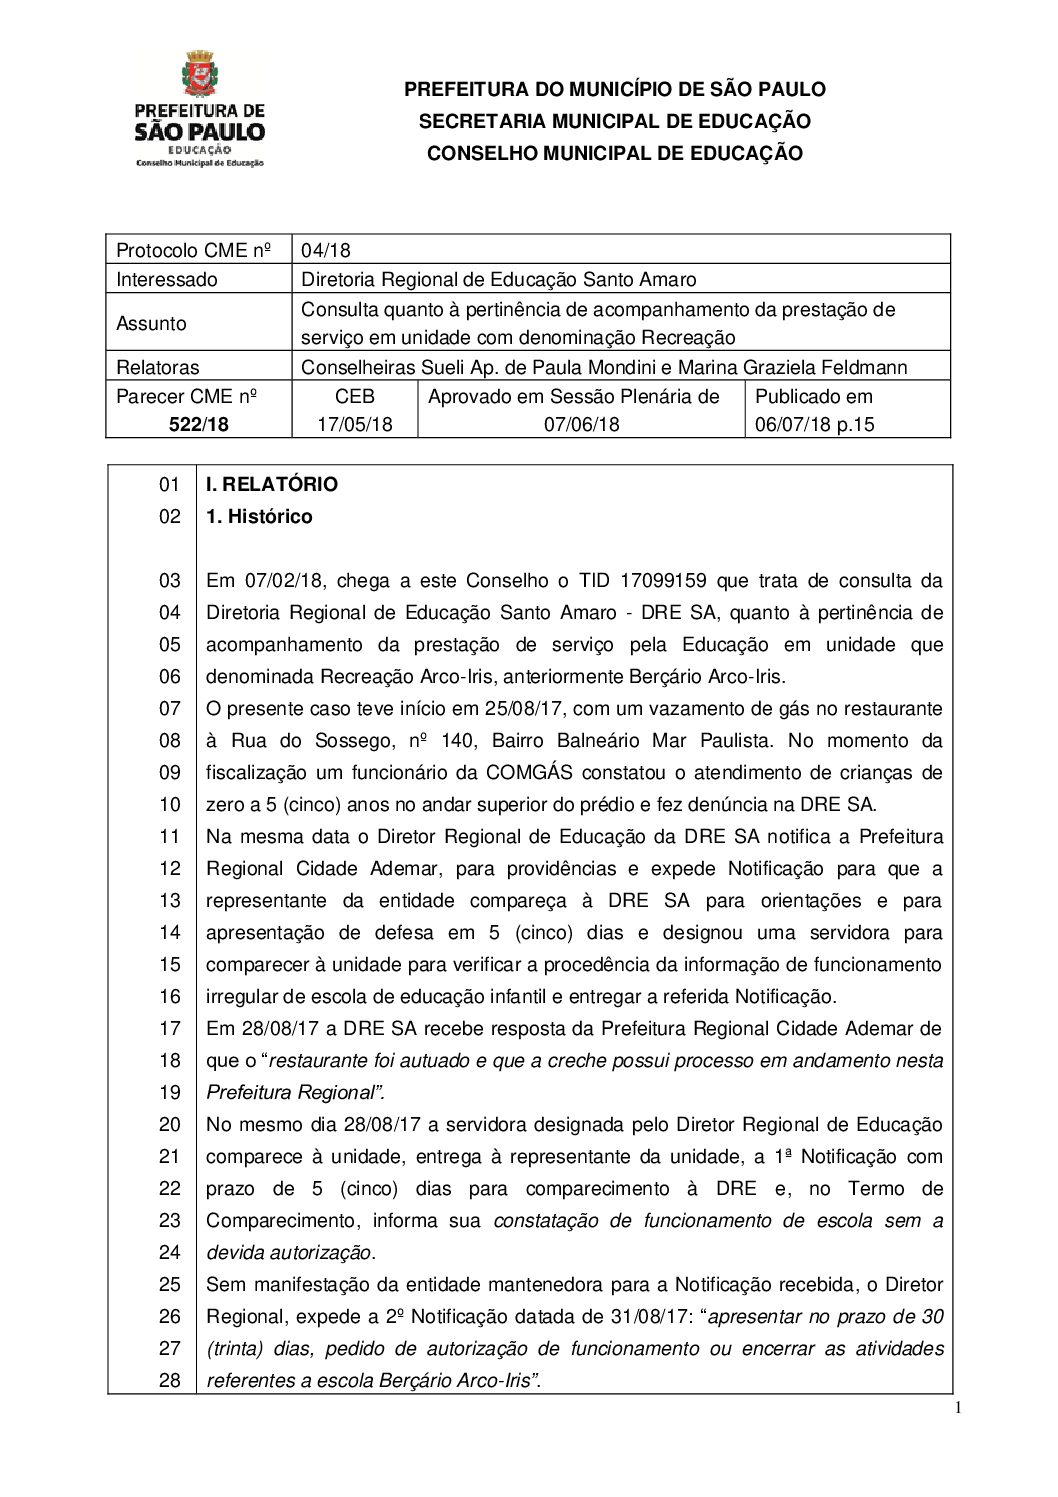 Parecer CME nº 522/2018 - Consulta da DRE Santo Amaro quanto à pertinência de acompanhamento da prestação de serviço em unidade com denominação Recreação